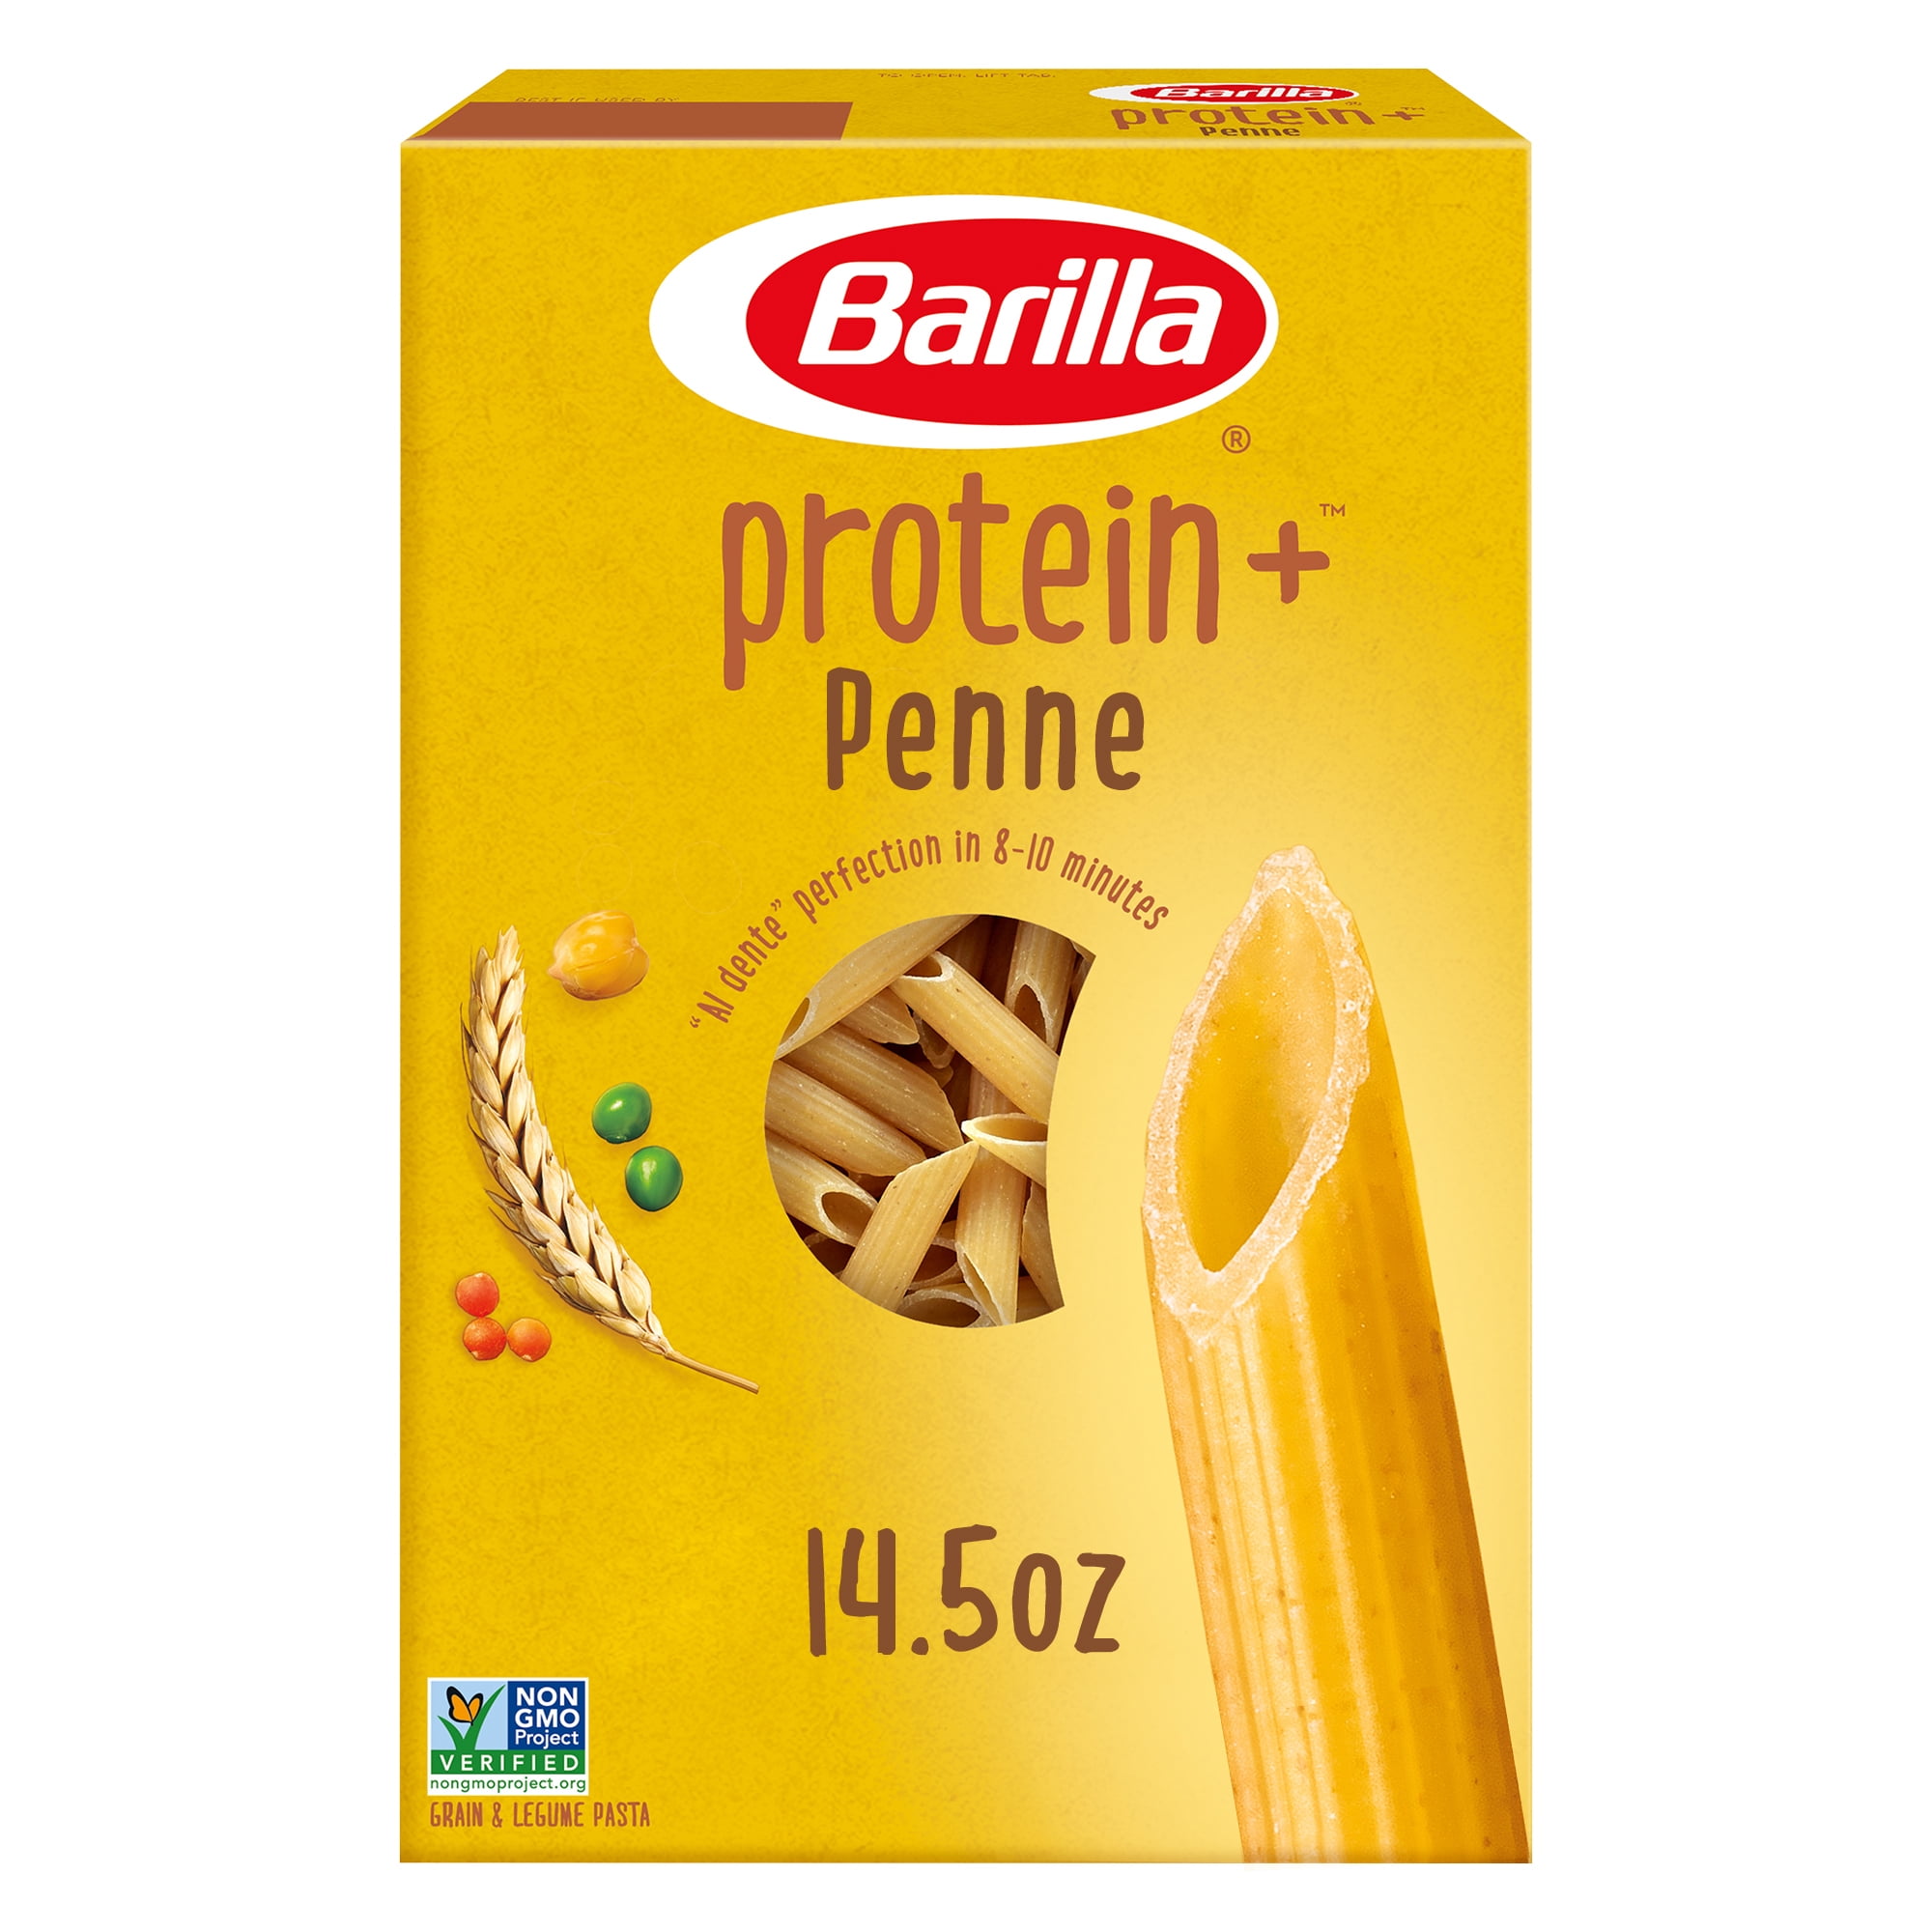 Barilla Protein+ Penne Pasta, 14.5 Oz